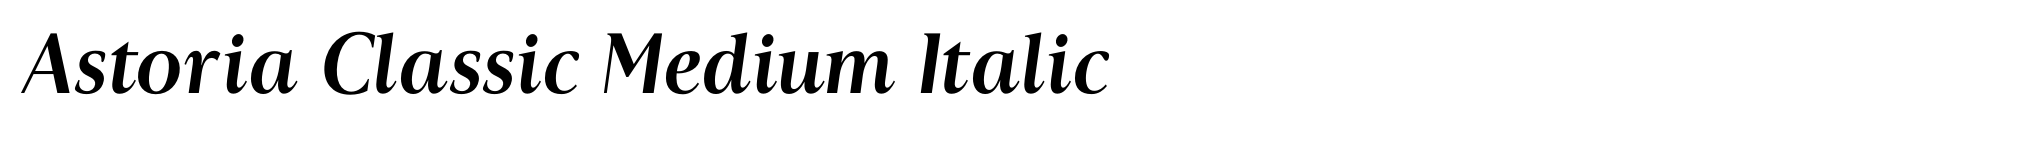 Astoria Classic Medium Italic image